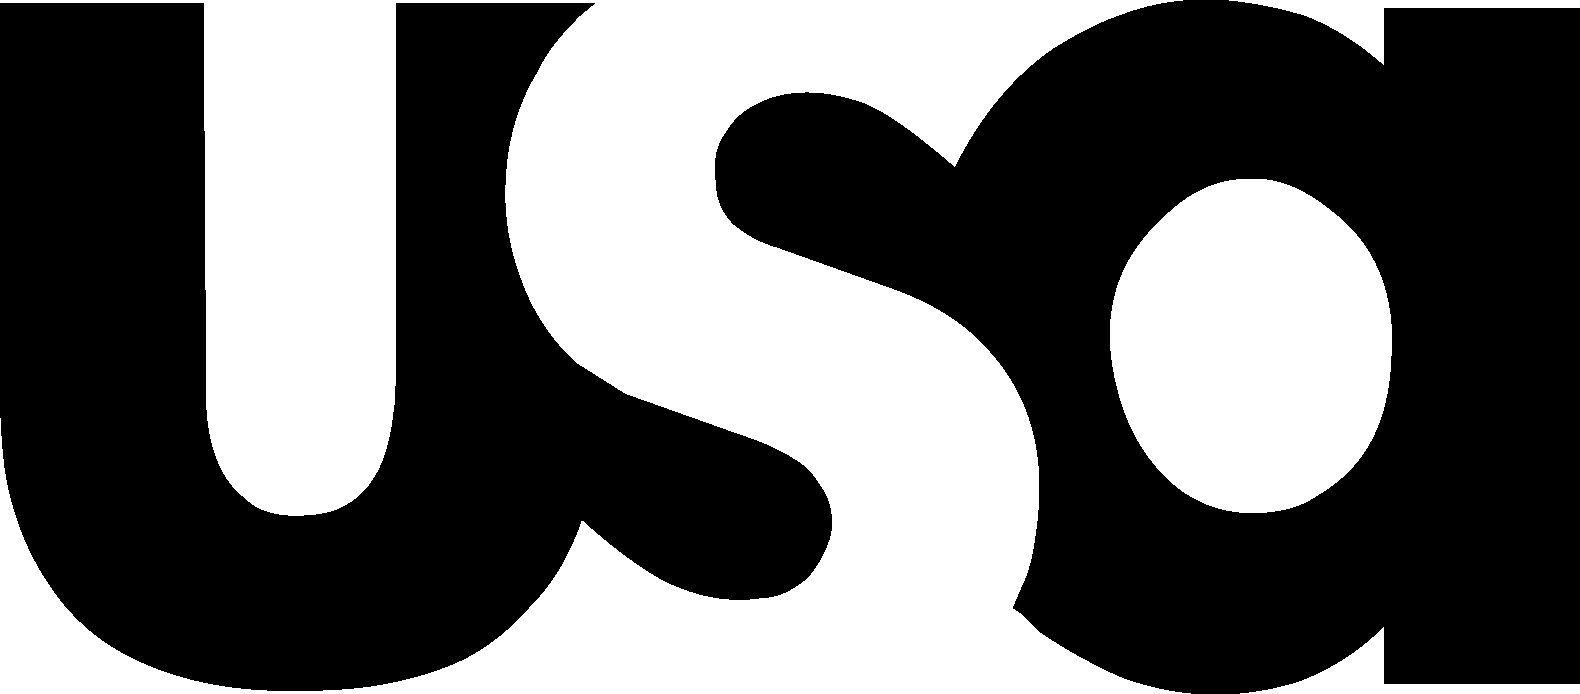 USA Network Logo [usanetwork.com]